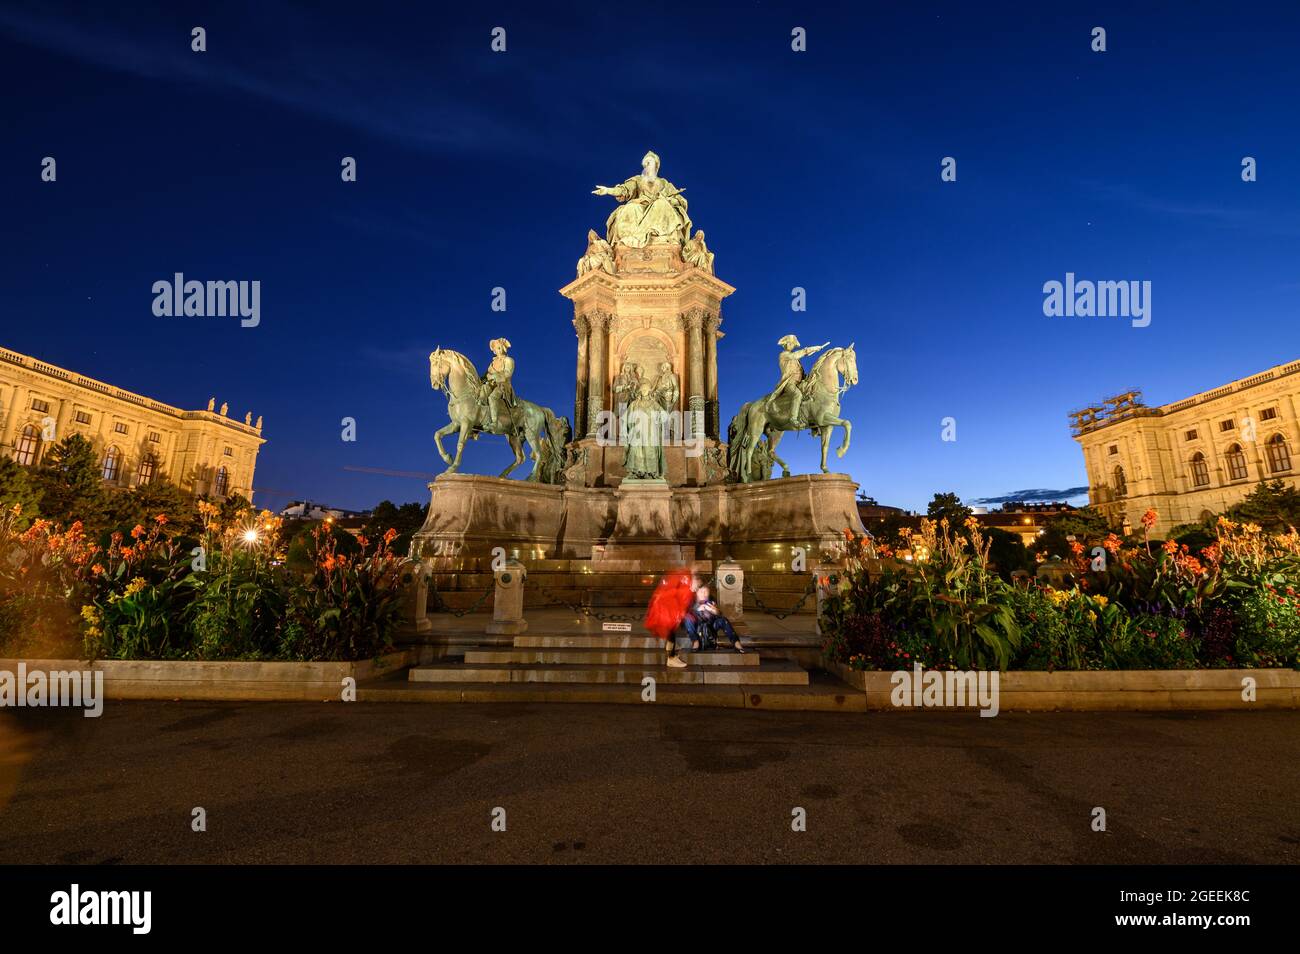 Le monument de l'impératrice Maria Theresa est situé au centre de Maria-Theresien-Platz, dans le centre-ville de Vienne. Banque D'Images